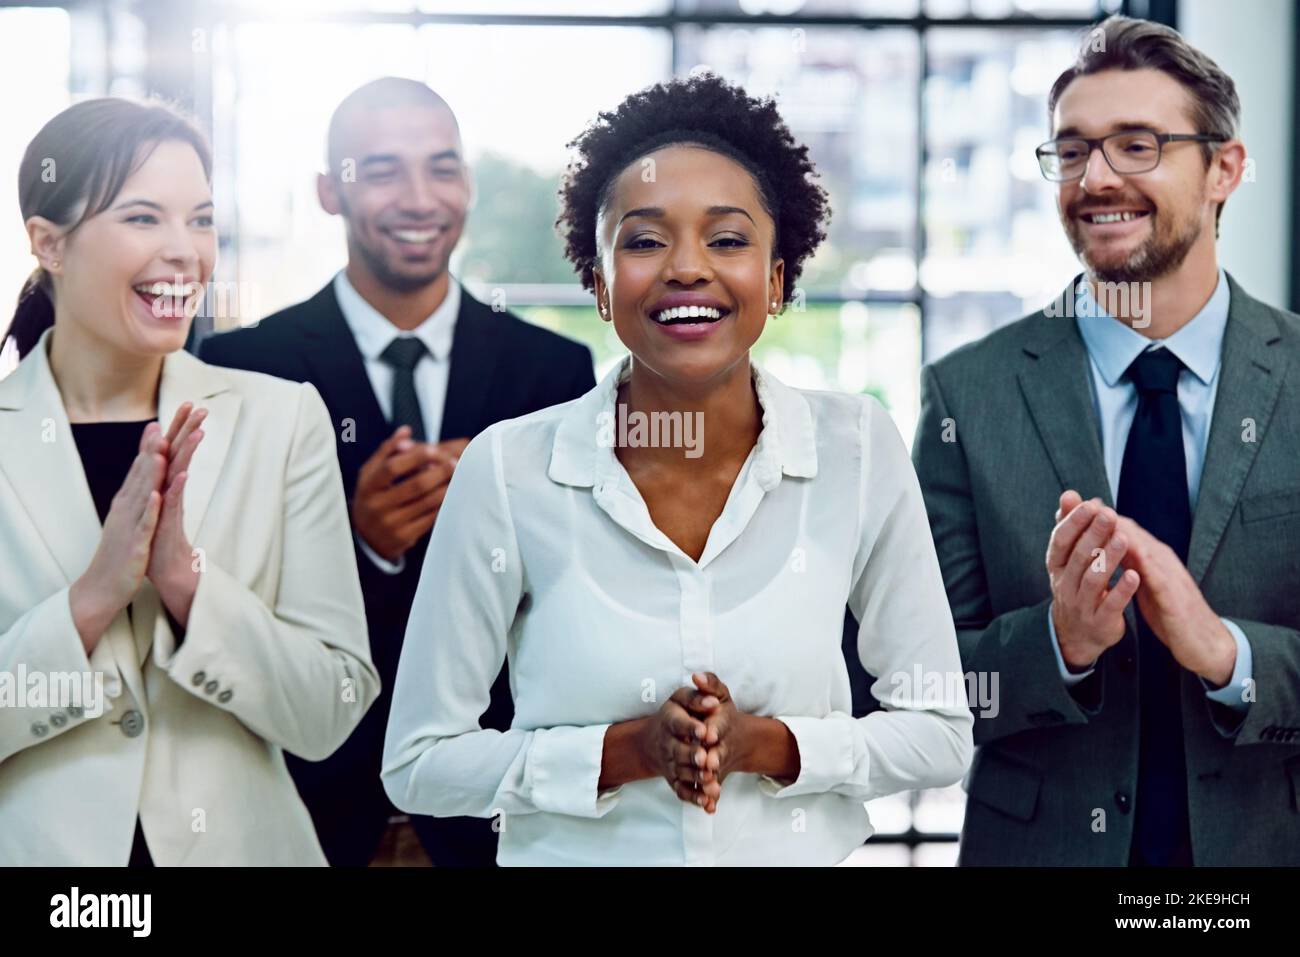 Il riconoscimento è la ricompensa per il duro lavoro. Ritratto di una donna d'affari di successo applaudita dai suoi colleghi in ufficio. Foto Stock